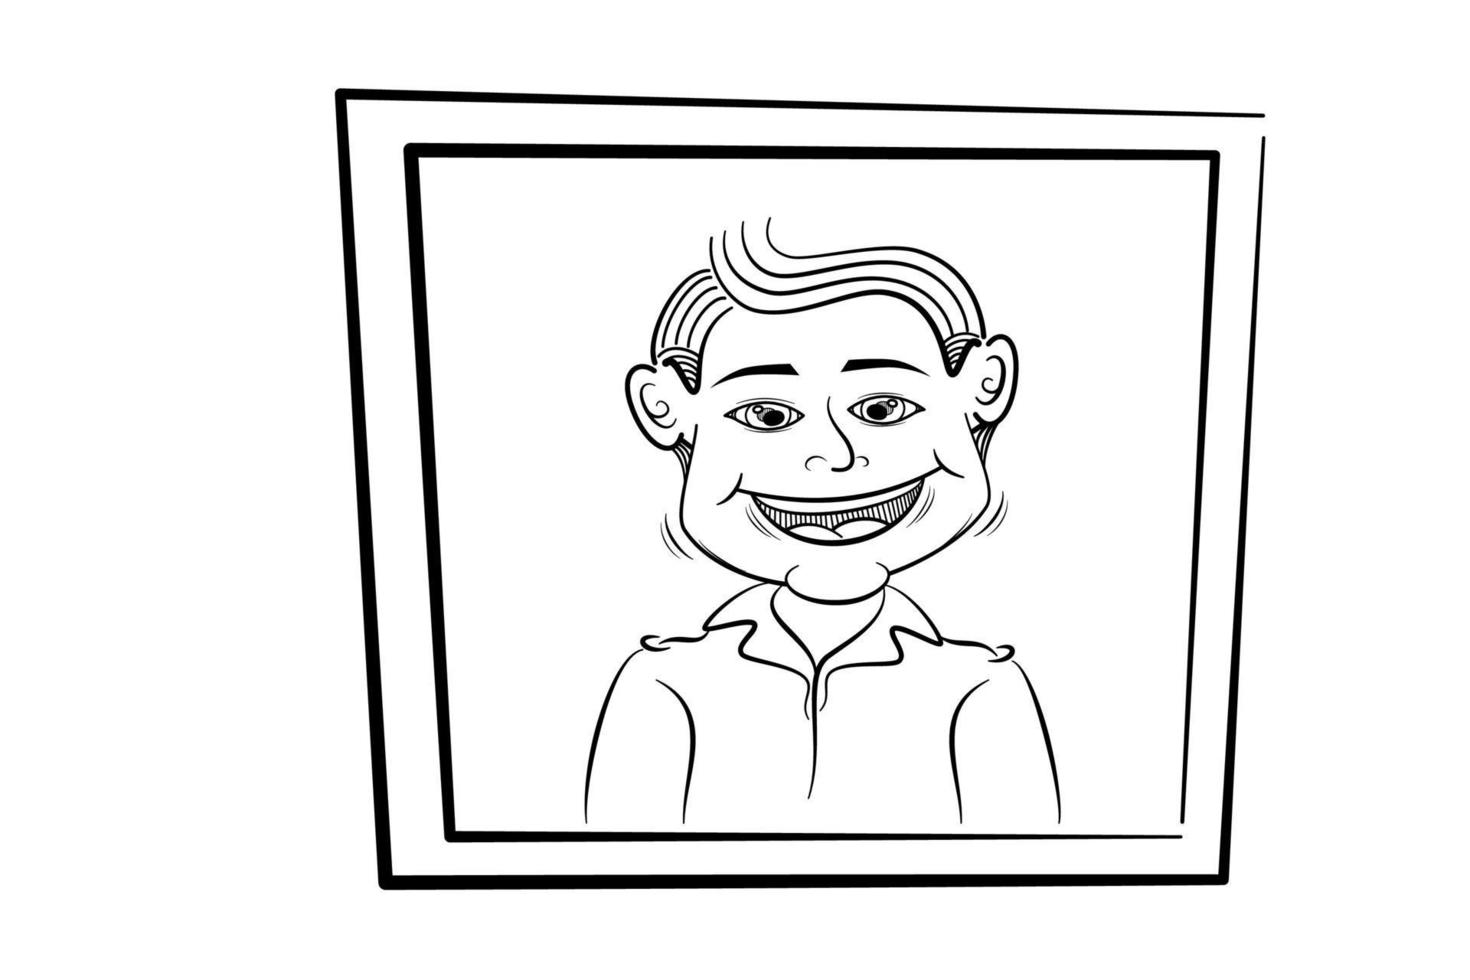 illustrazione vettoriale di una persona con una faccia sorridente nella cornice